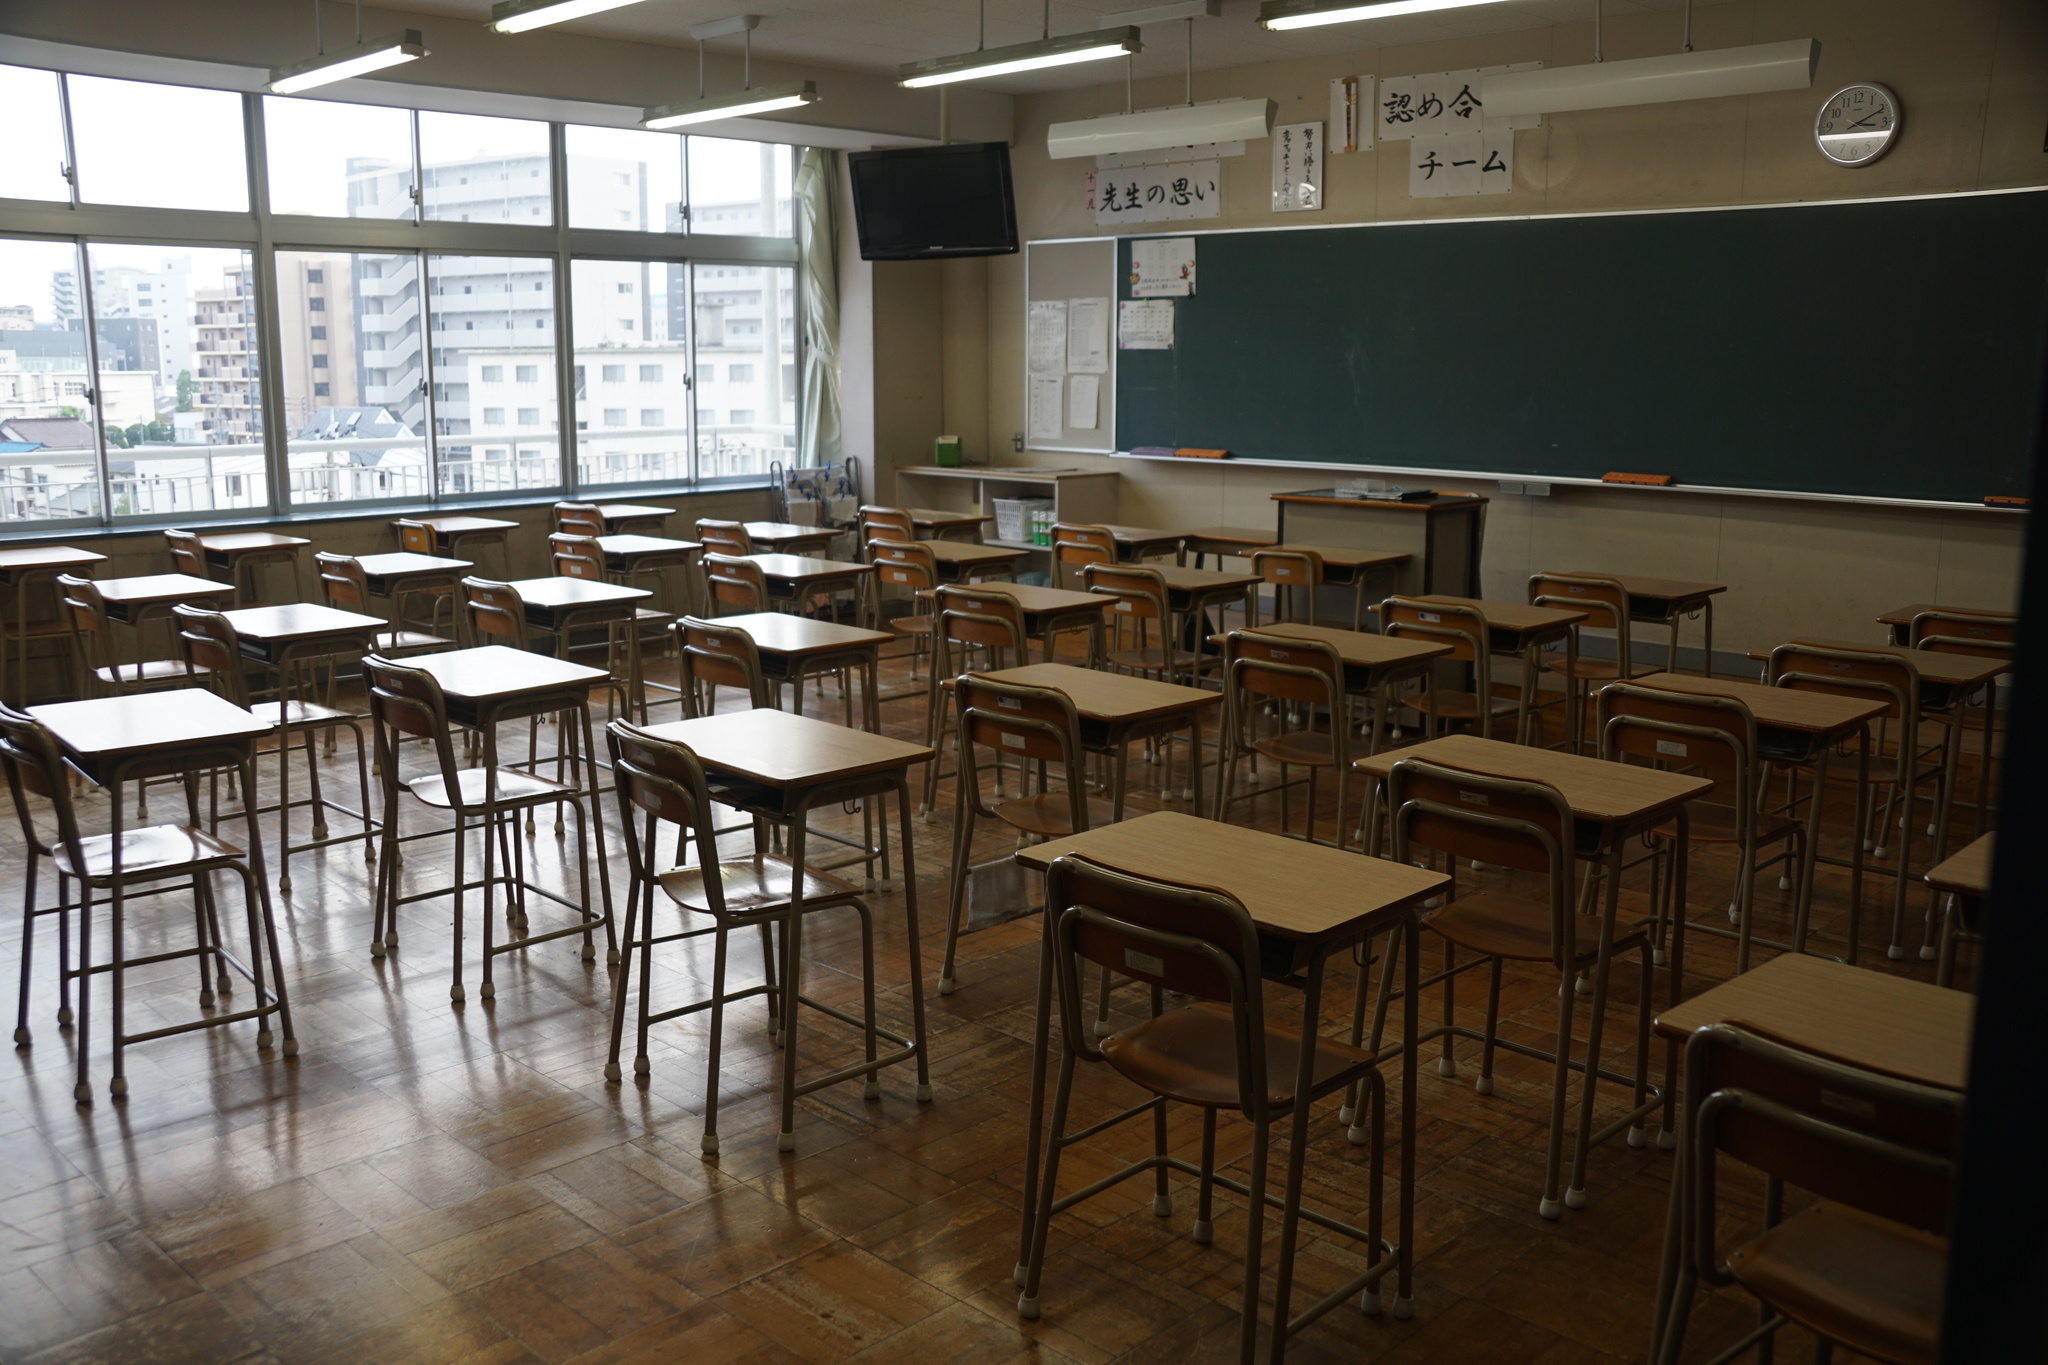 Классы в японской школе. Школы в Японии внутри. Школы Японии изнутри. Японская школа внутри класс. Японские классы в школе.